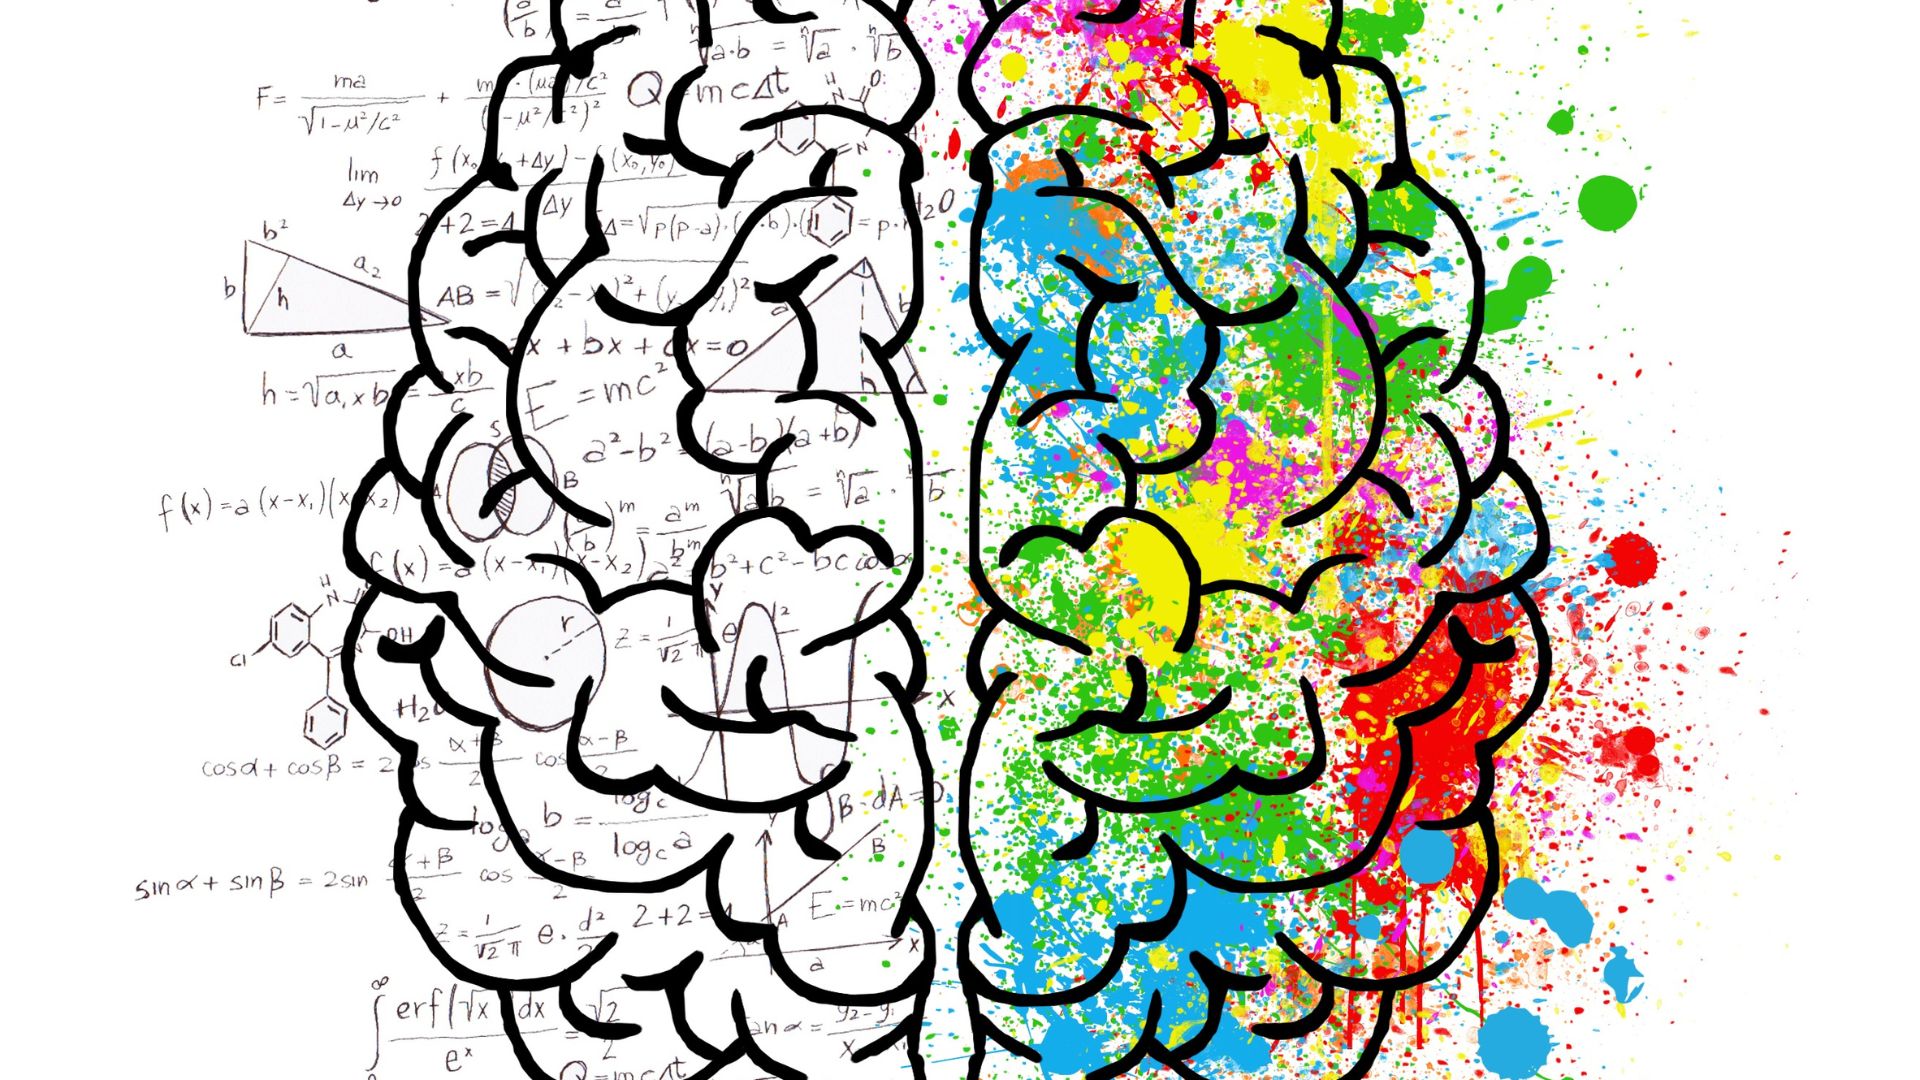 Disegno delle due aree del cervello umano